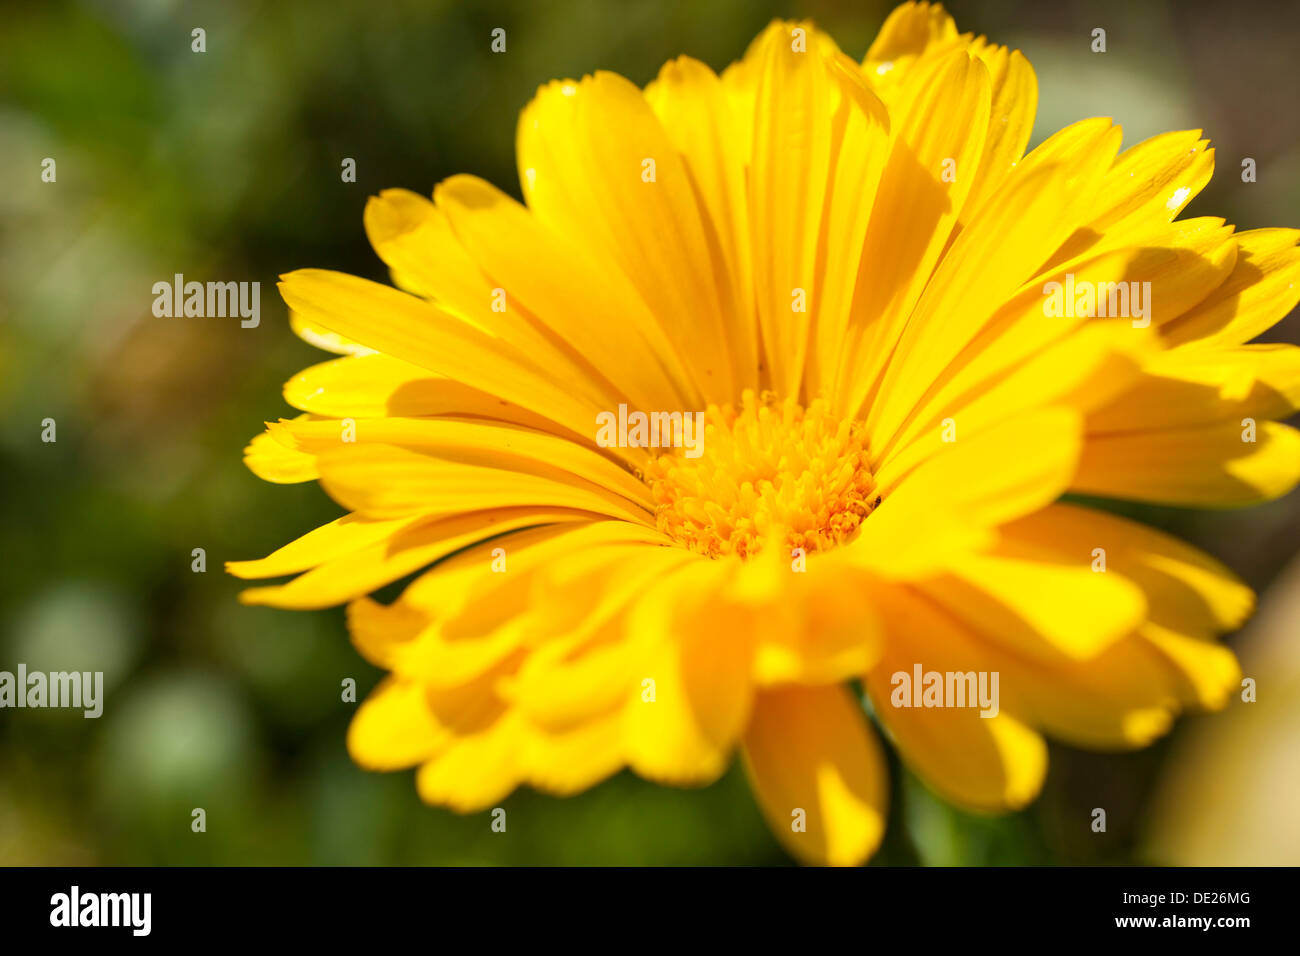 Pot Marigold (Calendula officinalis), yellow flower, Saxony, Germany Stock Photo